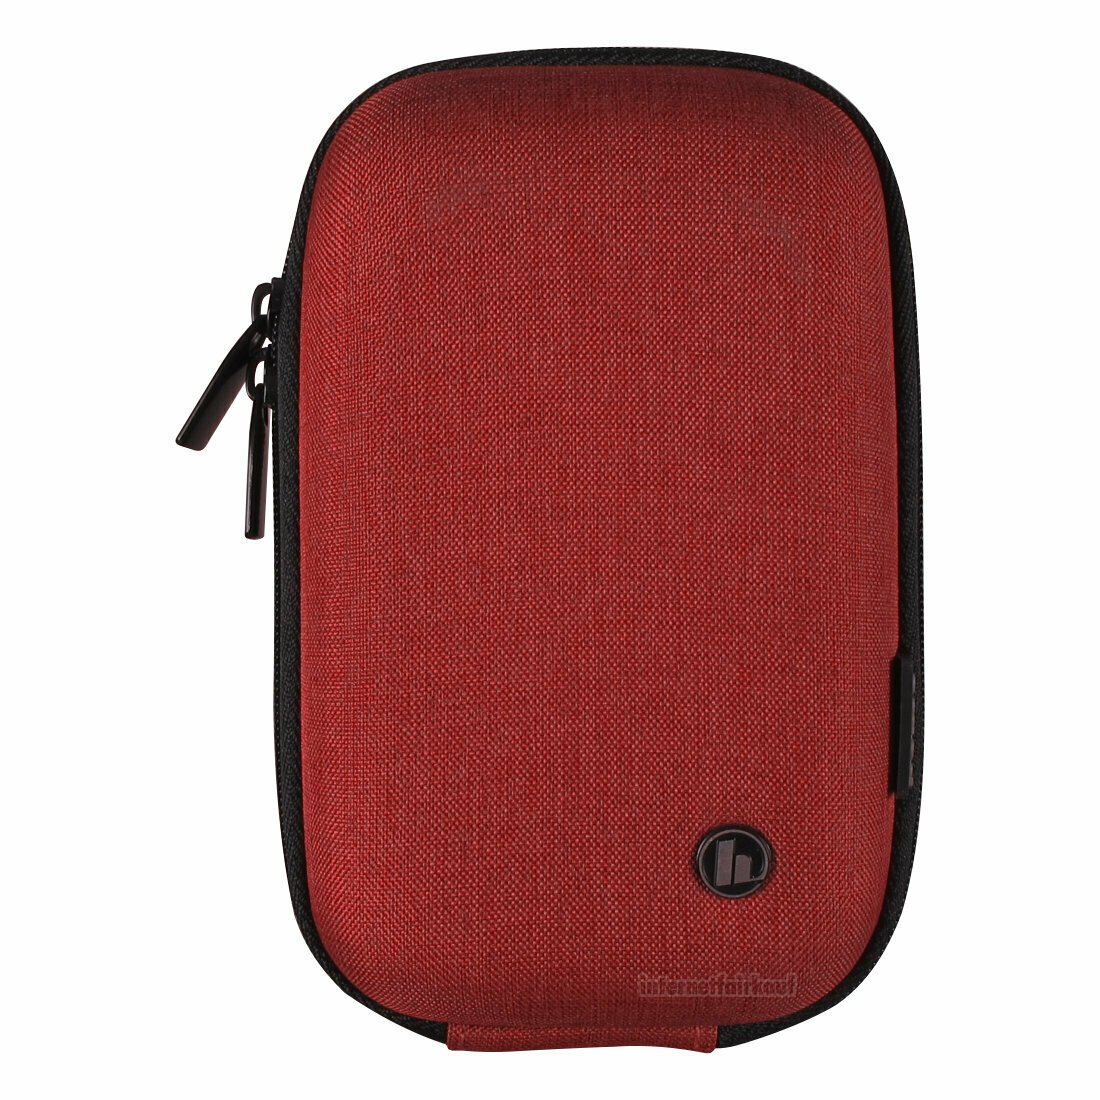 Hardcase Kameratasche rot passend für Olympus Tough TG-1